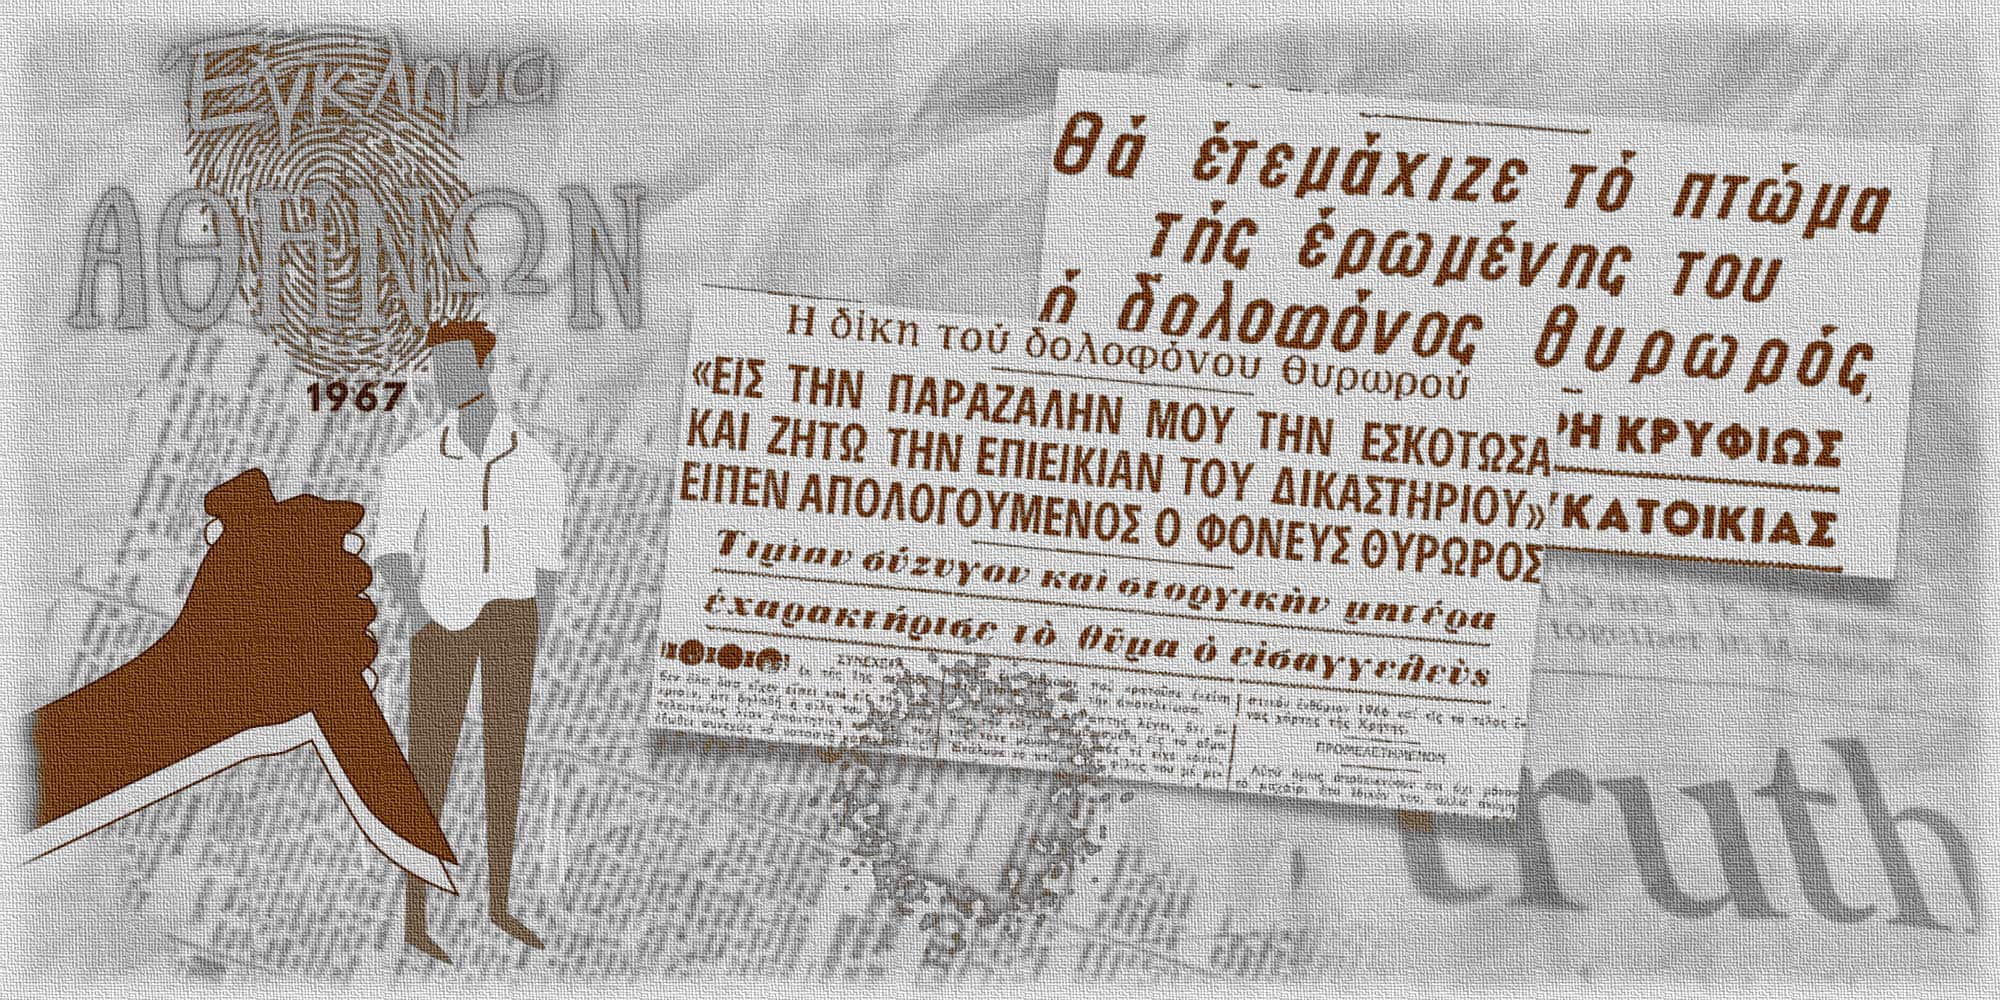 Το έγκλημα των Αθηνών, το 1967, κατά το οποίο θυρωρός σκότωσε έγκυο γυναίκα